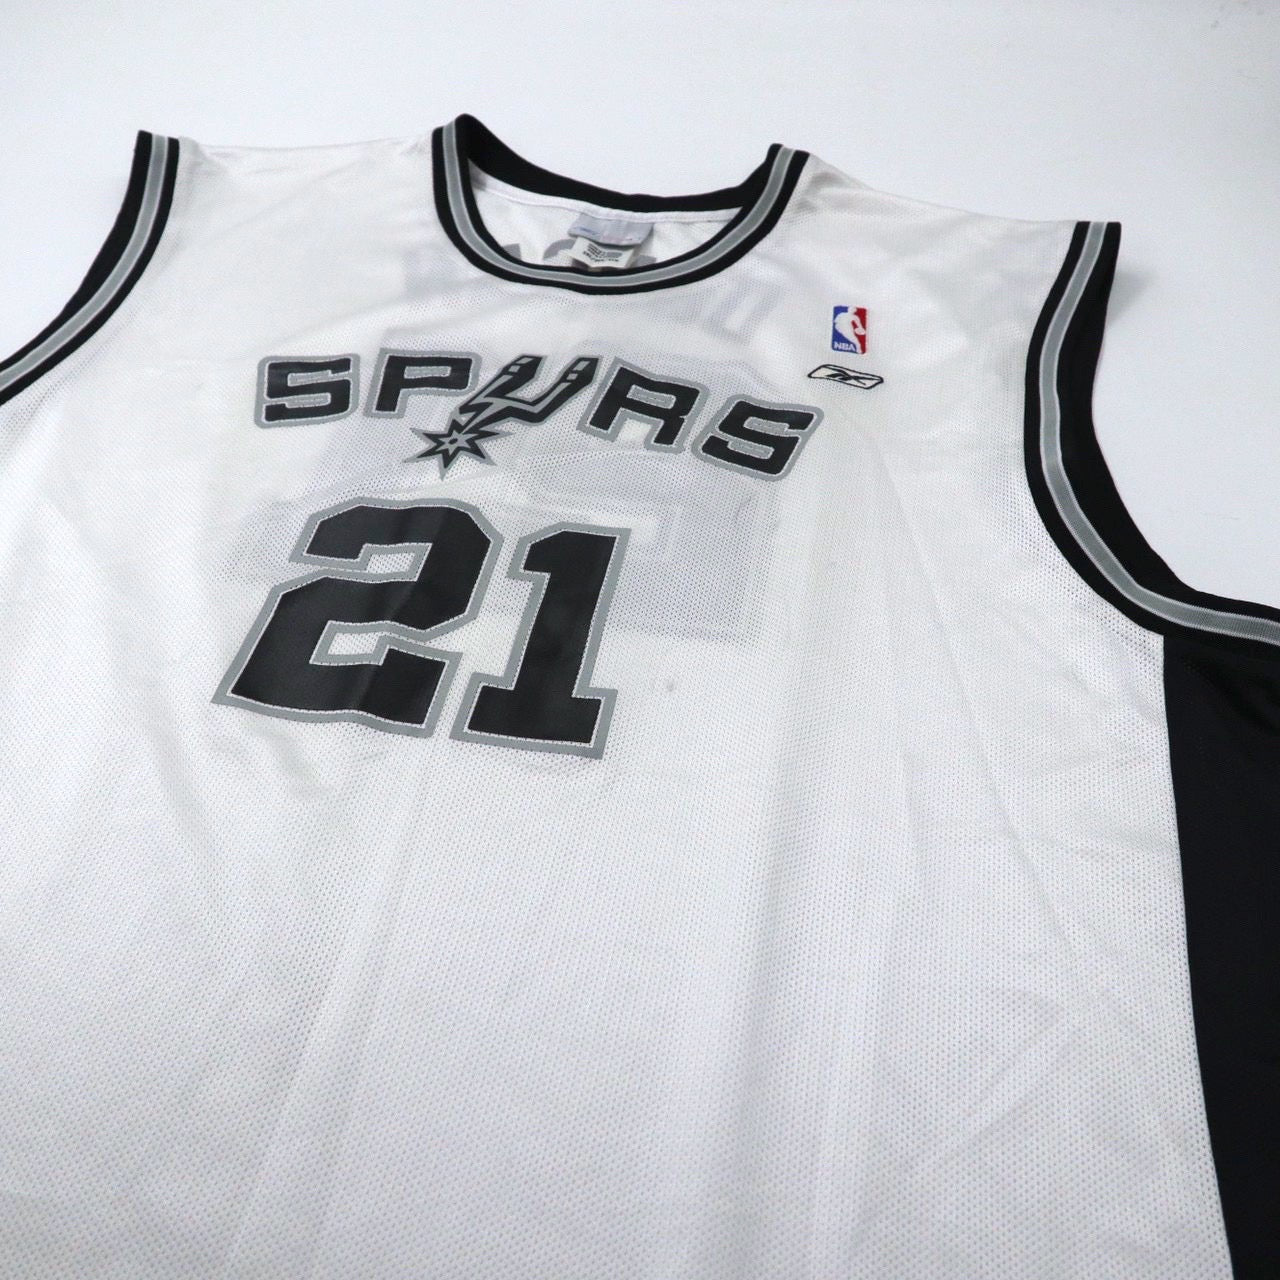 Reebok ビッグサイズ ゲームシャツ バスケタンク 2XL ホワイト ナンバリング NBA San Antonio Spurs エルサルバドル製